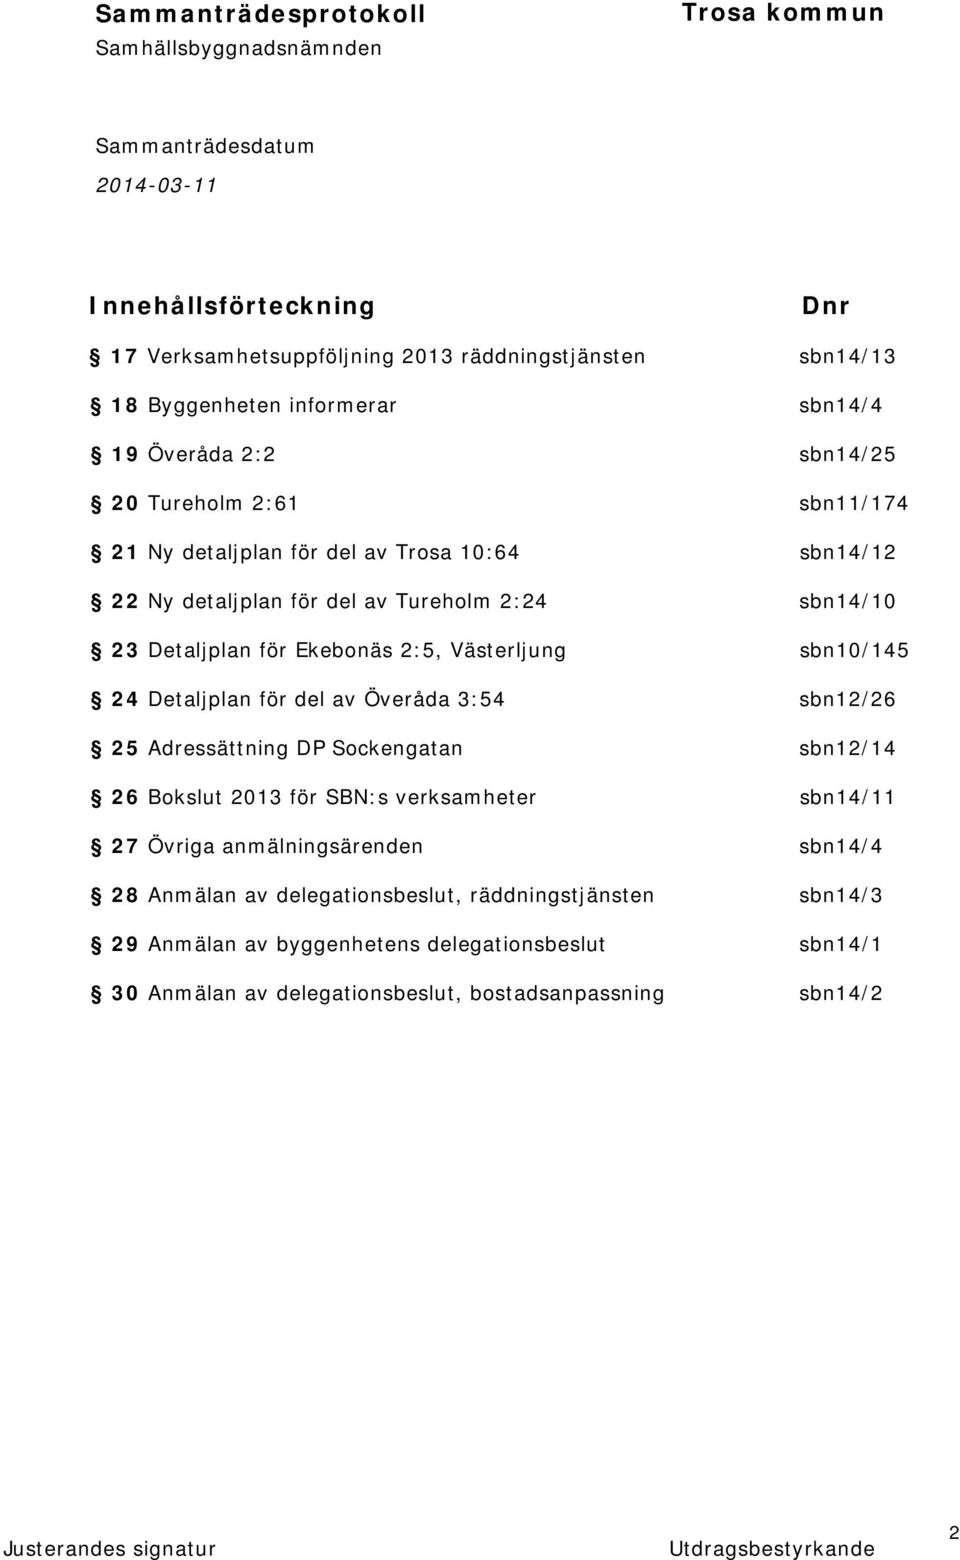 Detaljplan för del av Överåda 3:54 sbn12/26 25 Adressättning DP Sockengatan sbn12/14 26 Bokslut 2013 för SBN:s verksamheter sbn14/11 27 Övriga anmälningsärenden